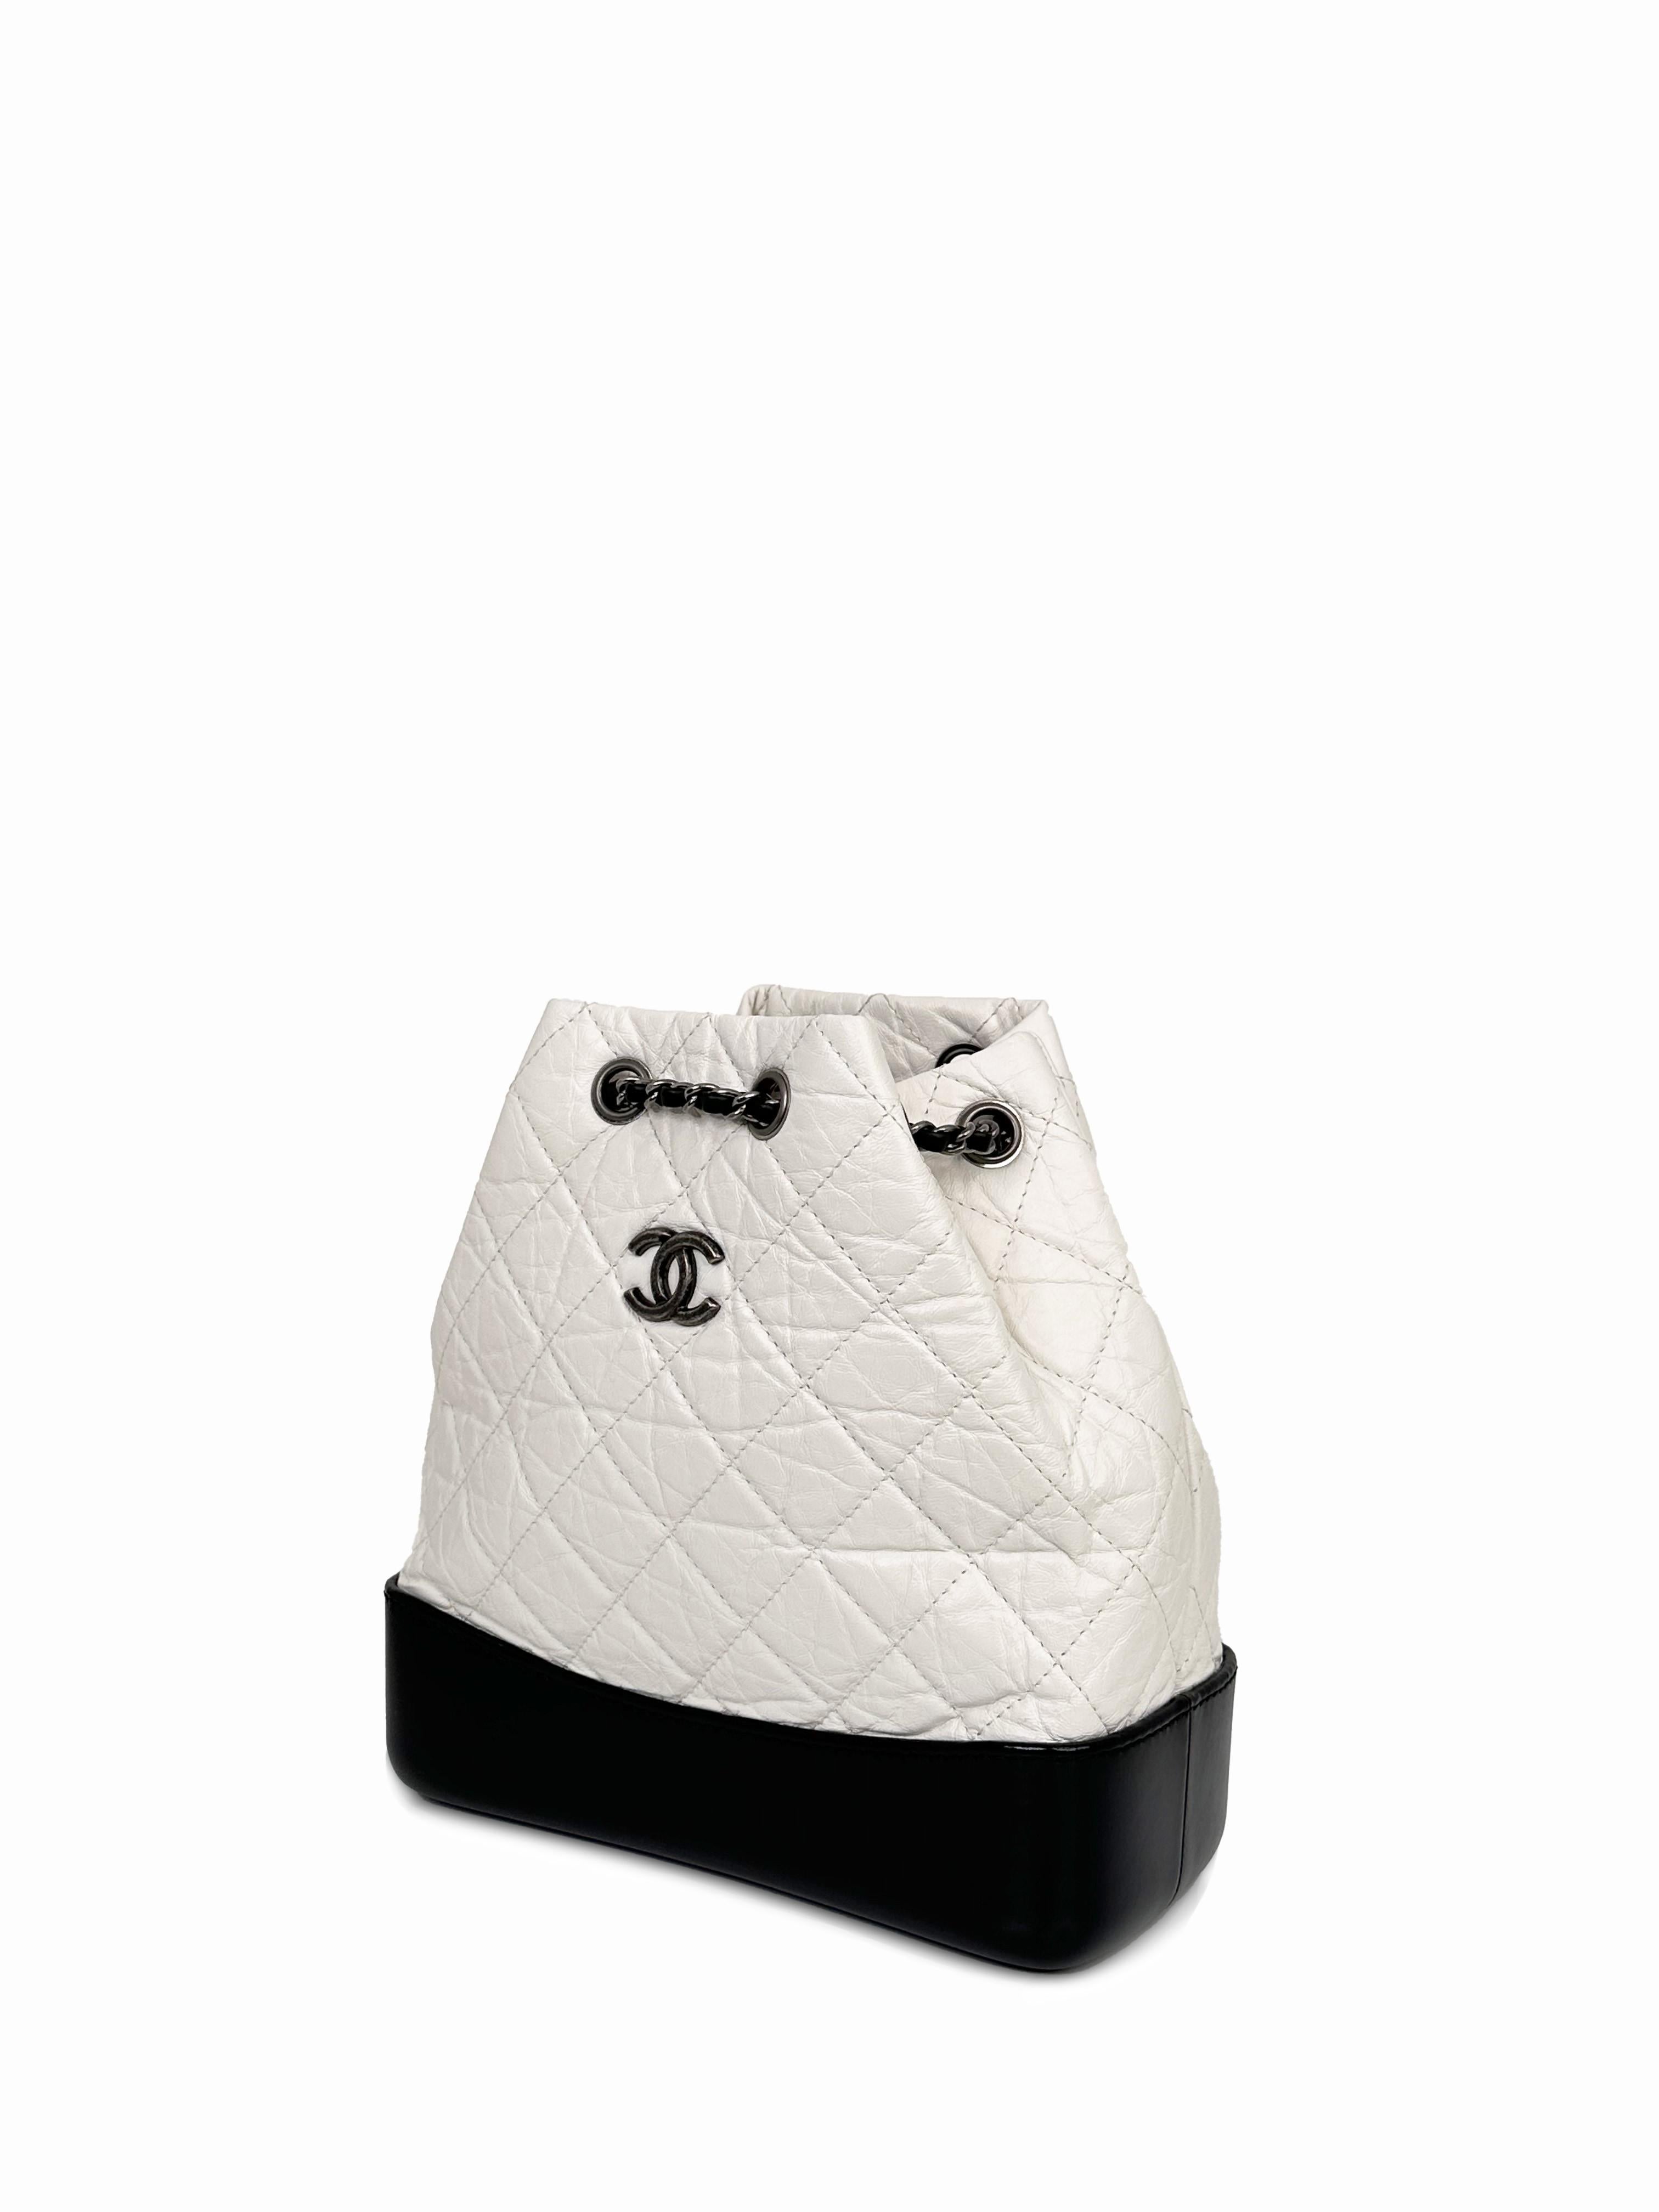 Le sac à dos Chanel Gabrielle est issu d'une ligne dessinée par Karl Lagerfeld pour le défilé de prêt-à-porter printemps-été 2017. Il se compose de cuir matelassé blanc vieilli, d'une base solide en cuir lisse noir, du logo CC emblématique et de